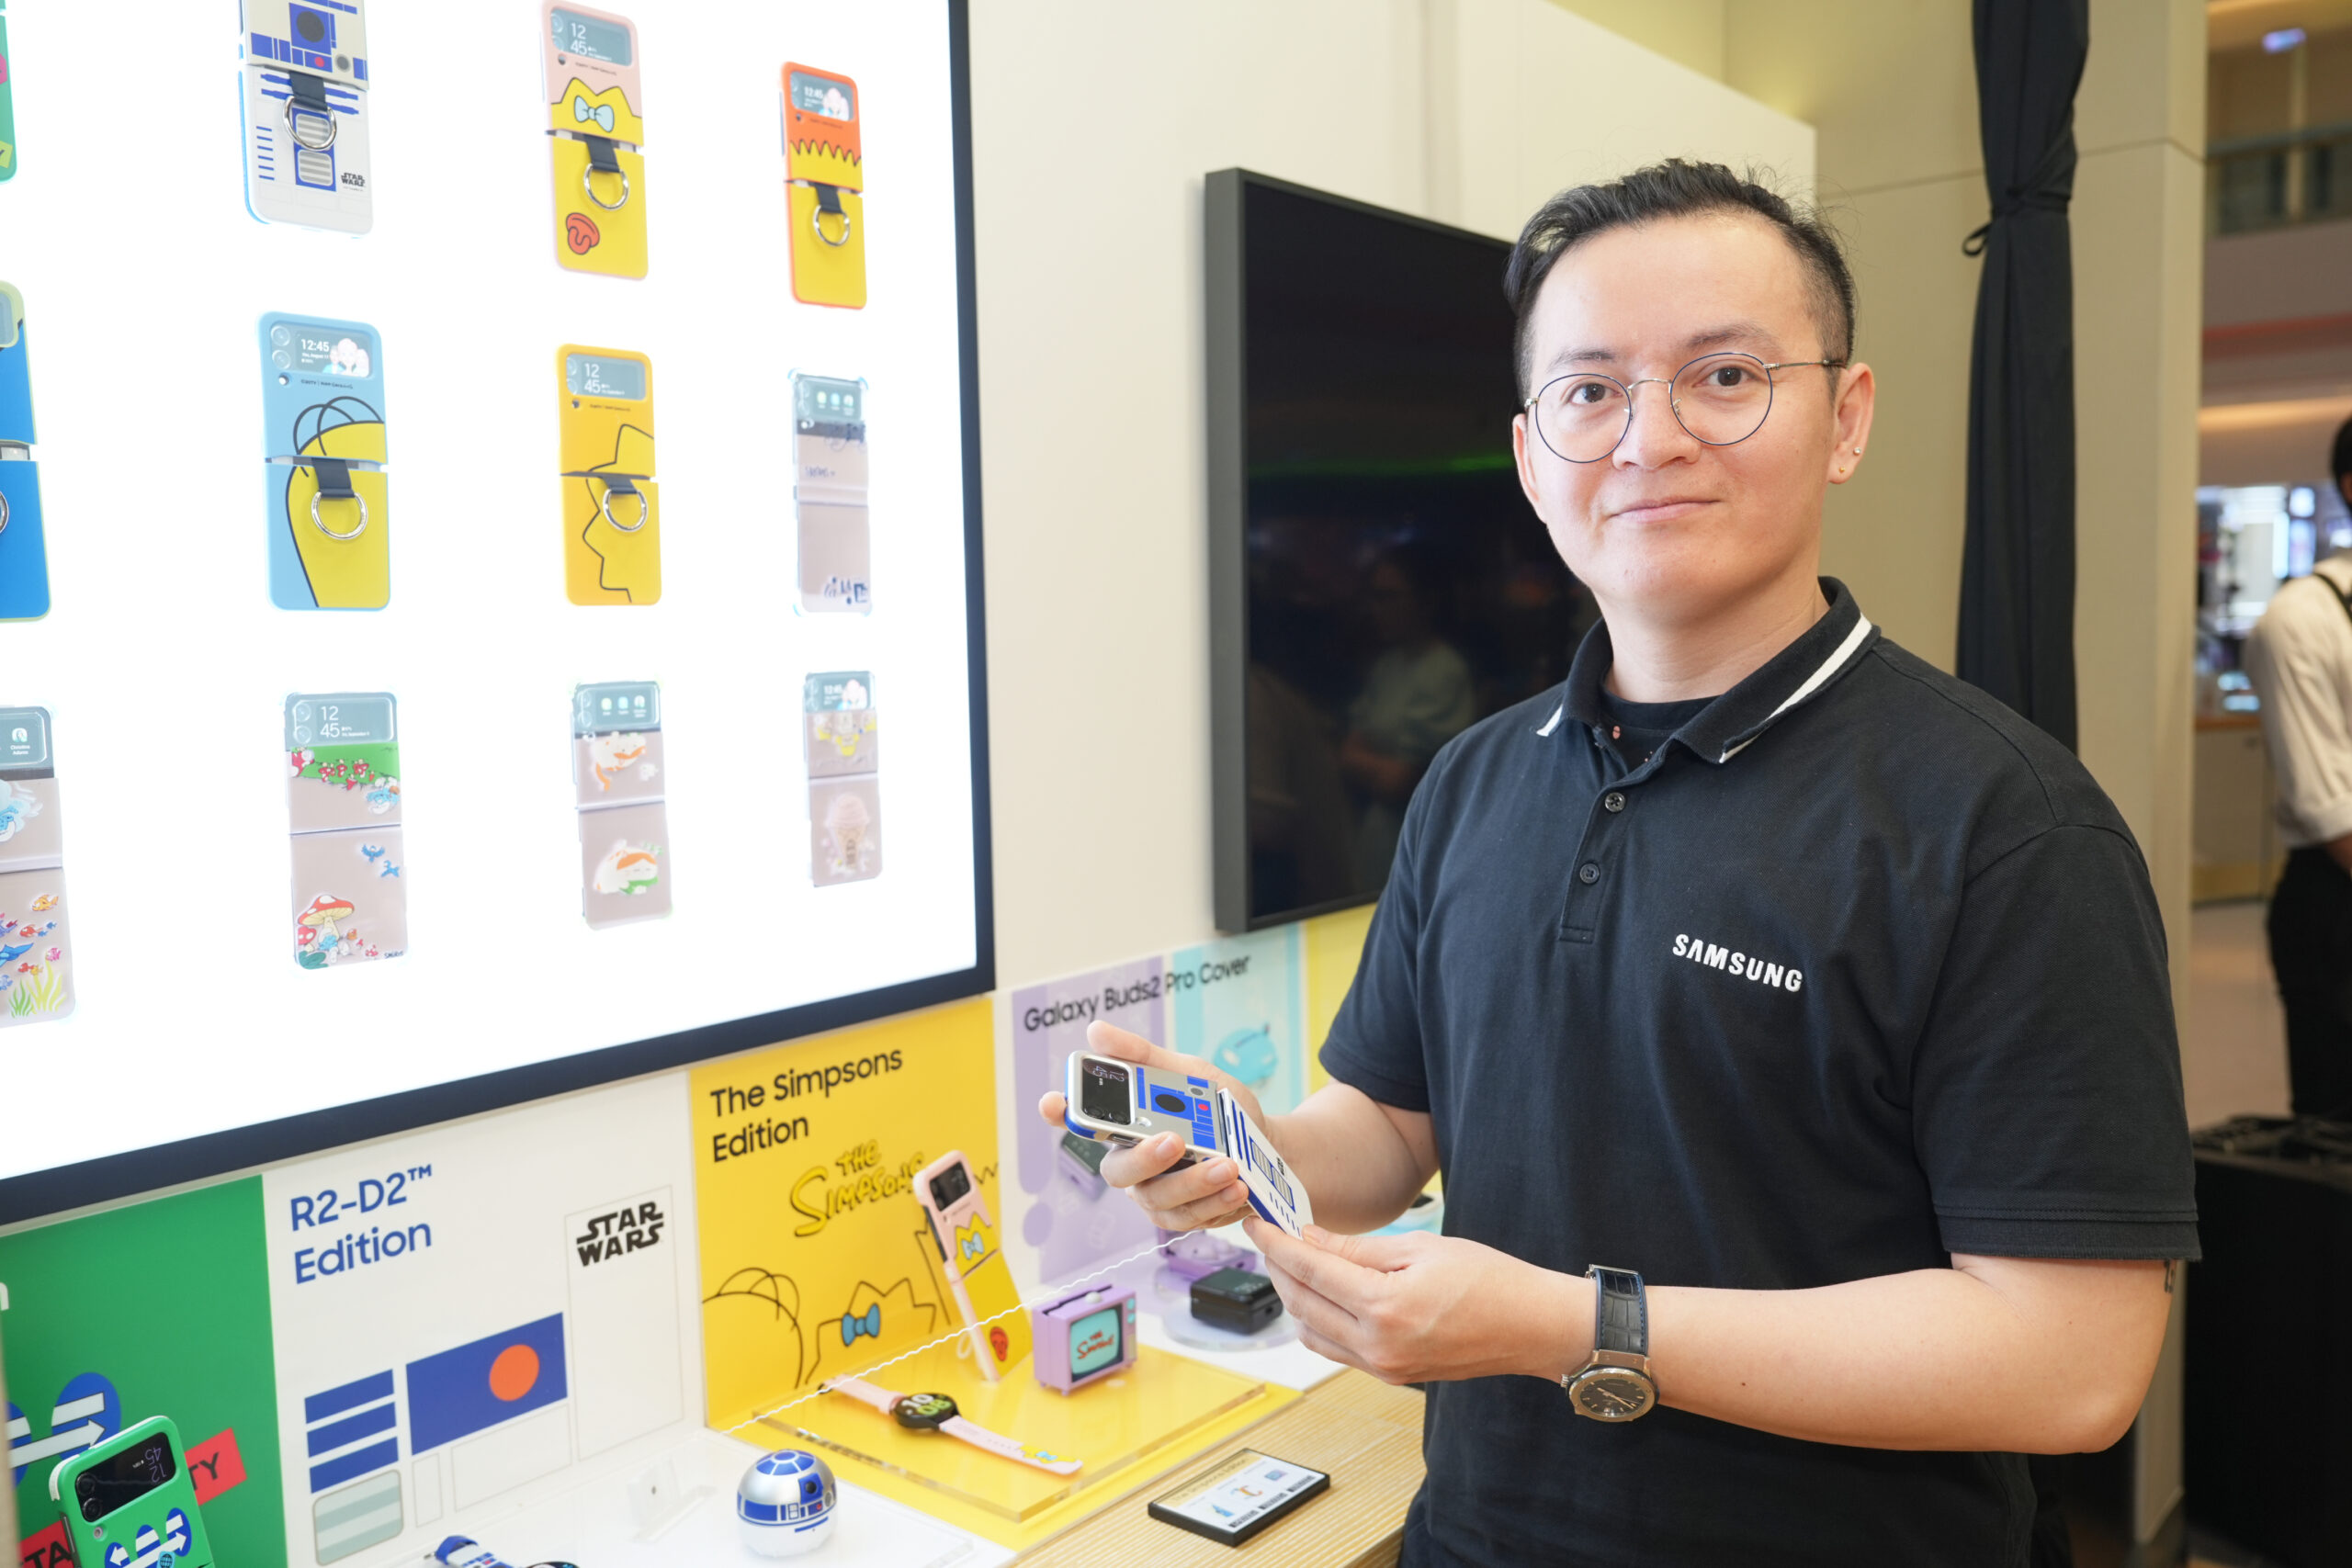 Samsung mang không gian phụ kiện “Cá nhân hóa cùng Galaxy” đến với giới trẻ Hà Nội